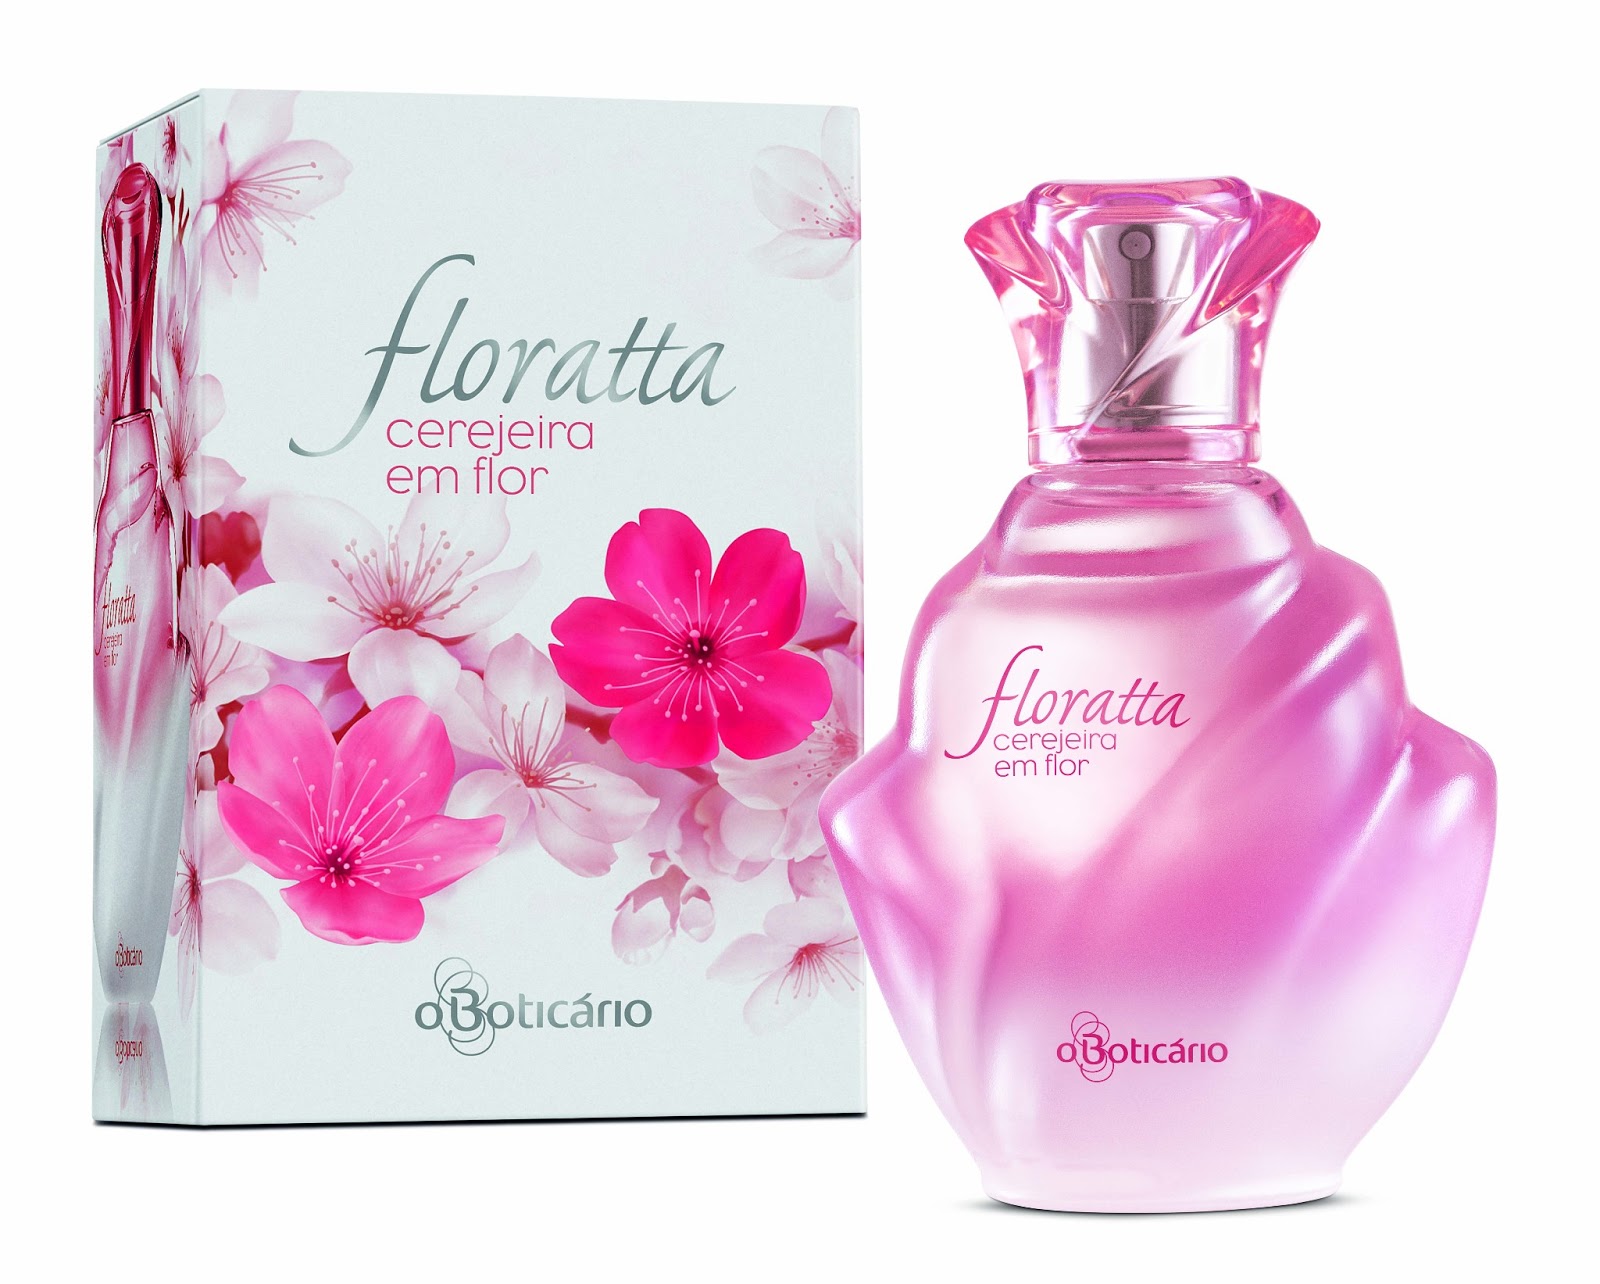 Floratta Cerejeira em Flor – O Boticário